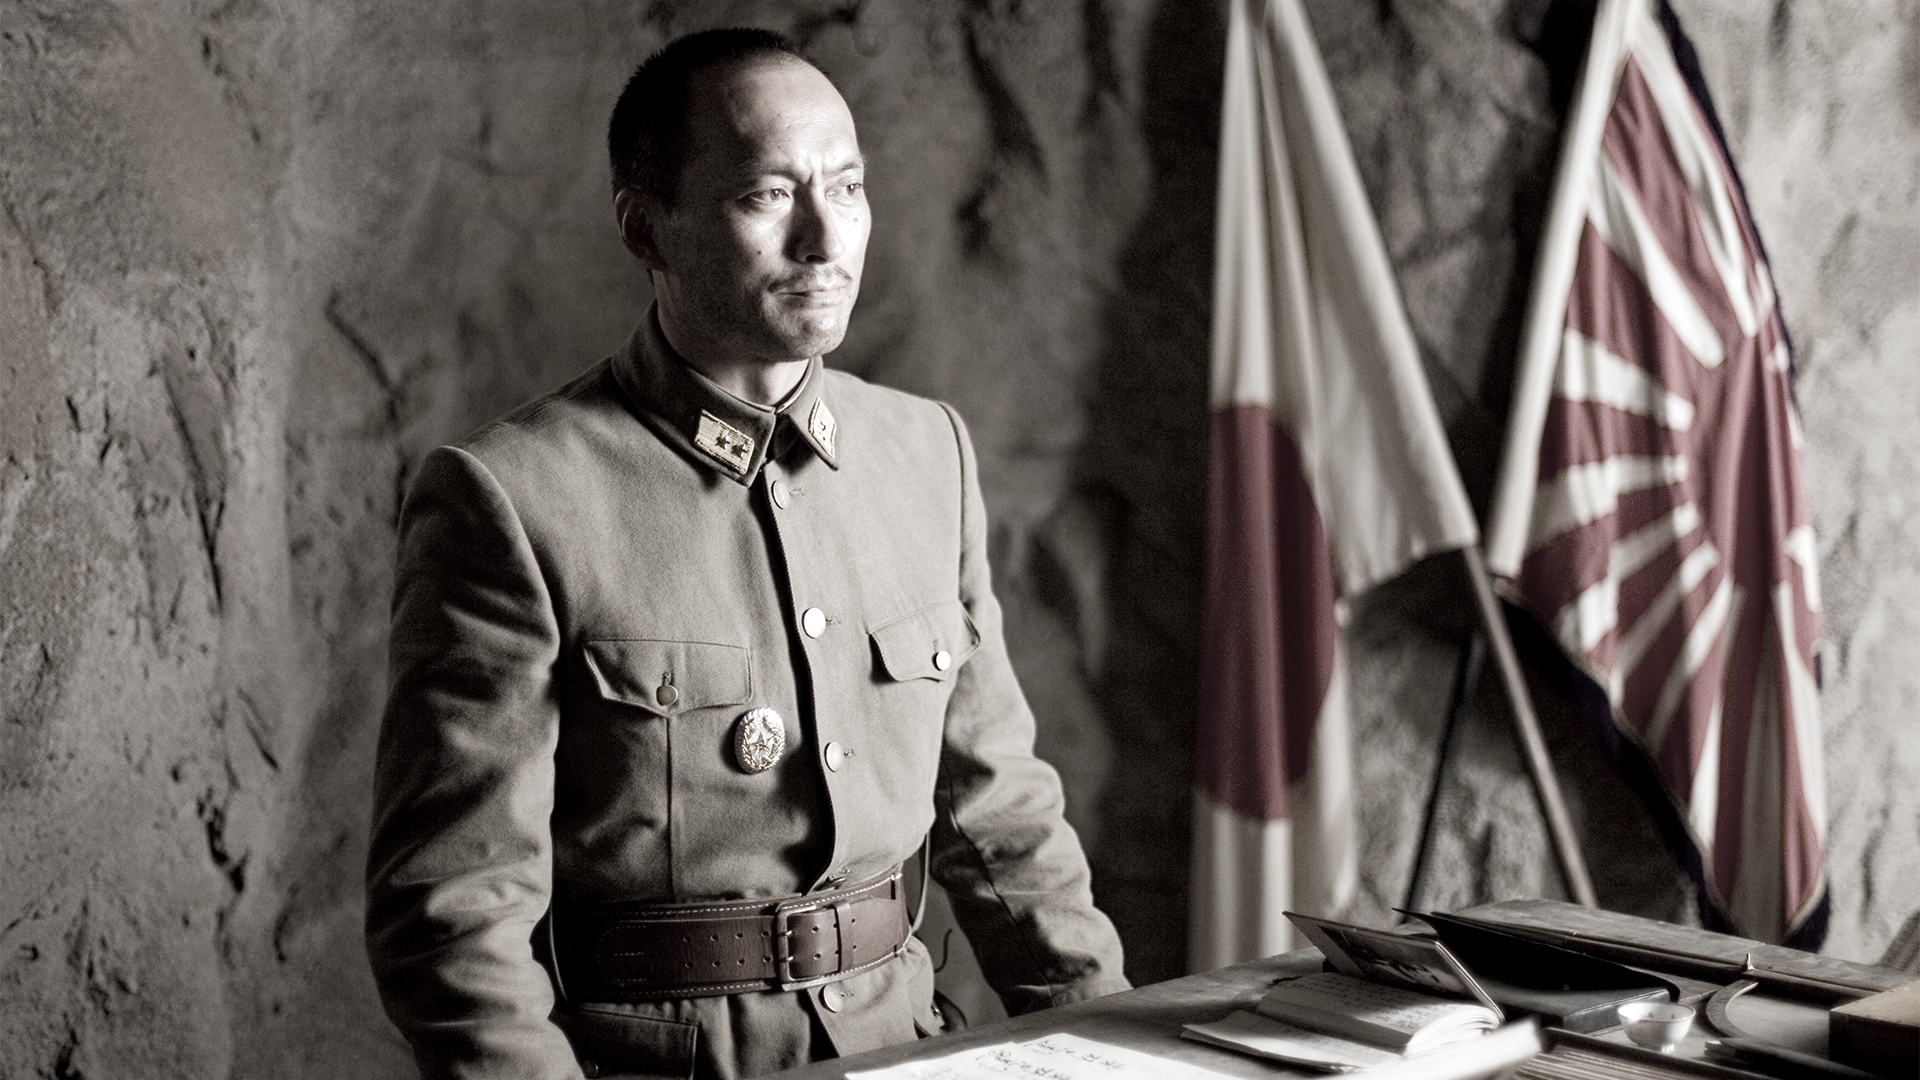 Letters From Iwo Jima / Letters From Iwo Jima (2006)